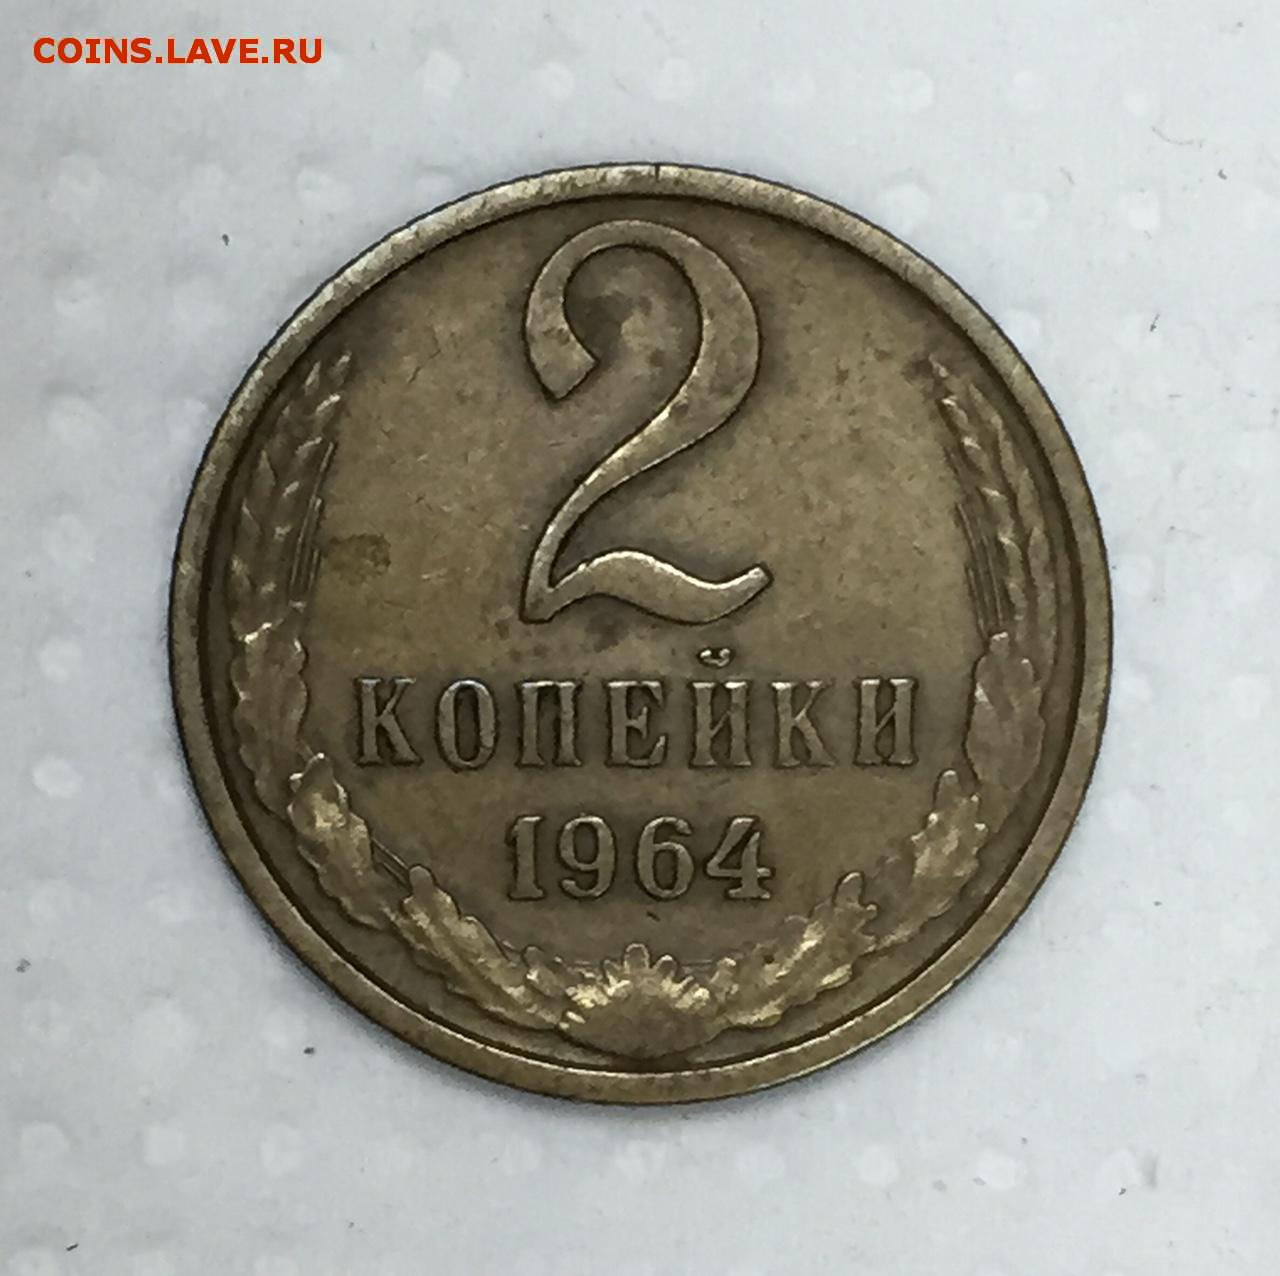 56 рублей 60. 2 Копейки 1964. 3 Рубля 62 копейки. 3 Копейки 1964. 62 Копейки.